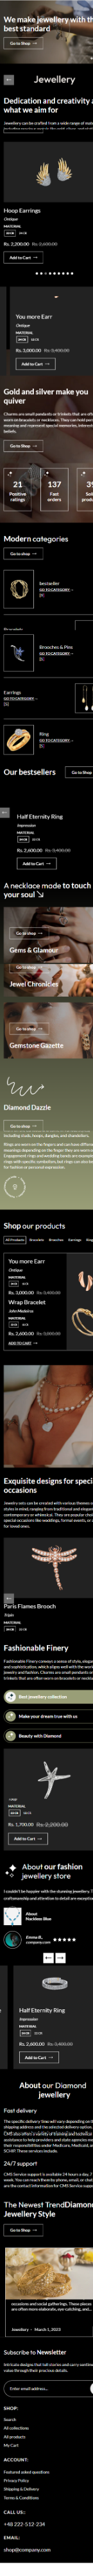 Jewellery Shopify Theme - WorkDo